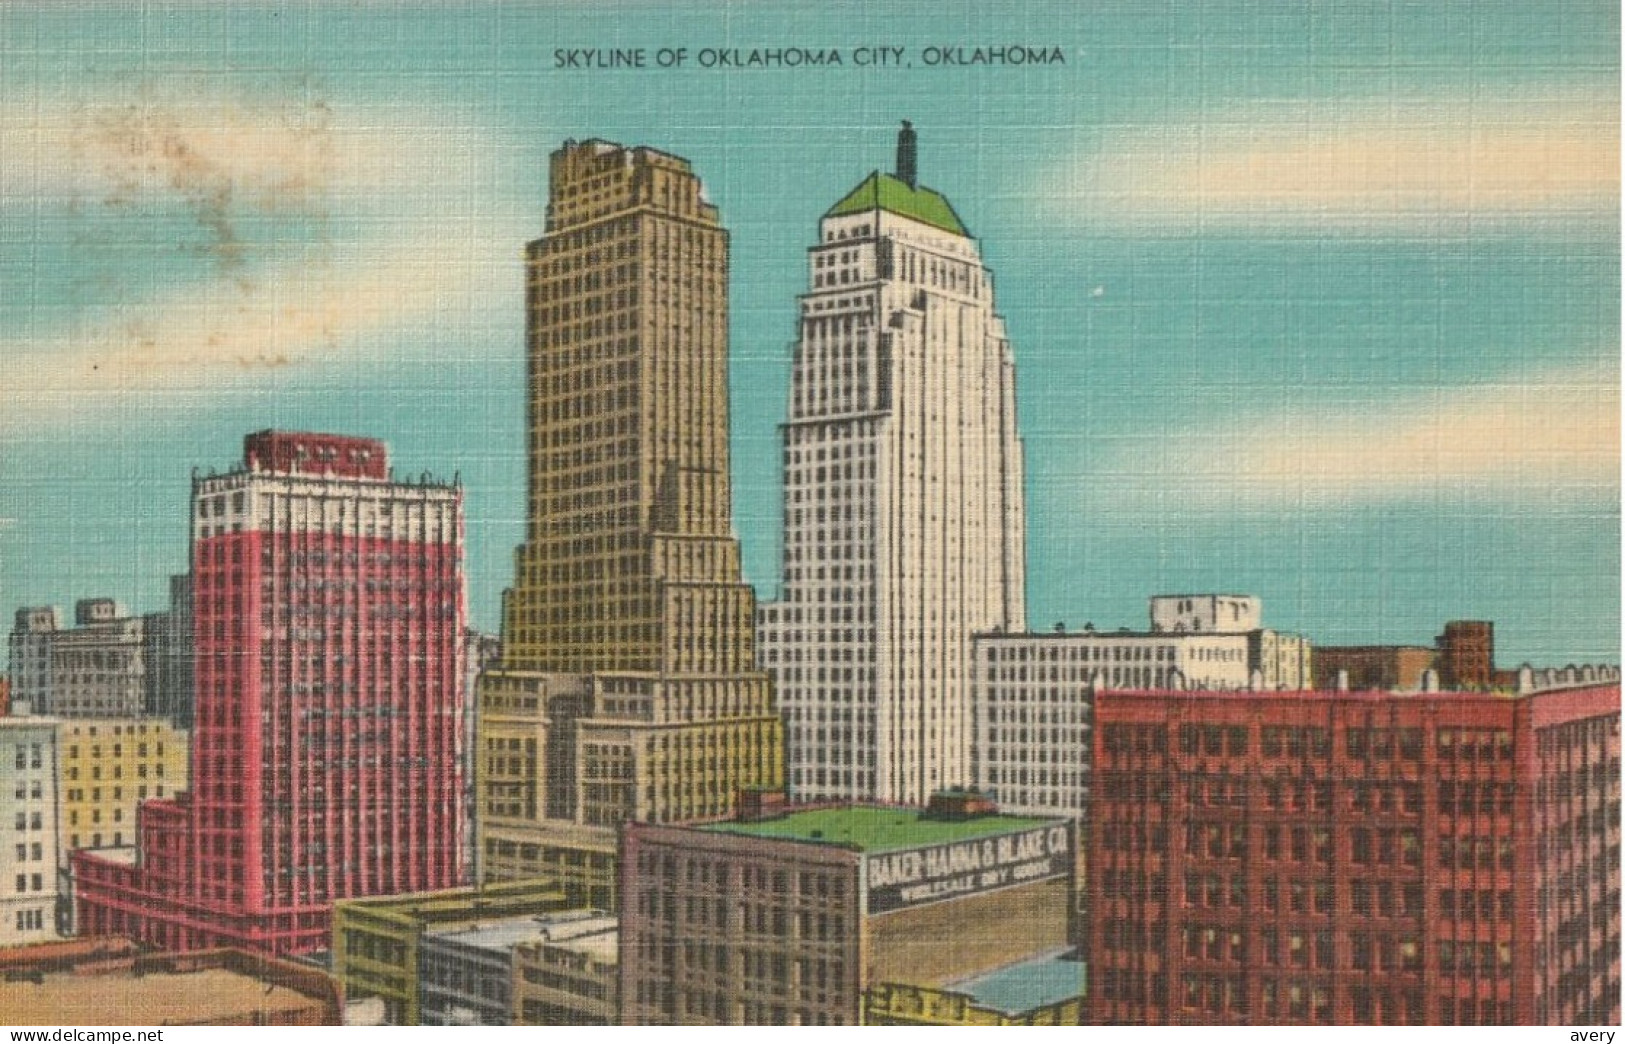 Skyline Of Oklahoma City, Oklahoma - Oklahoma City